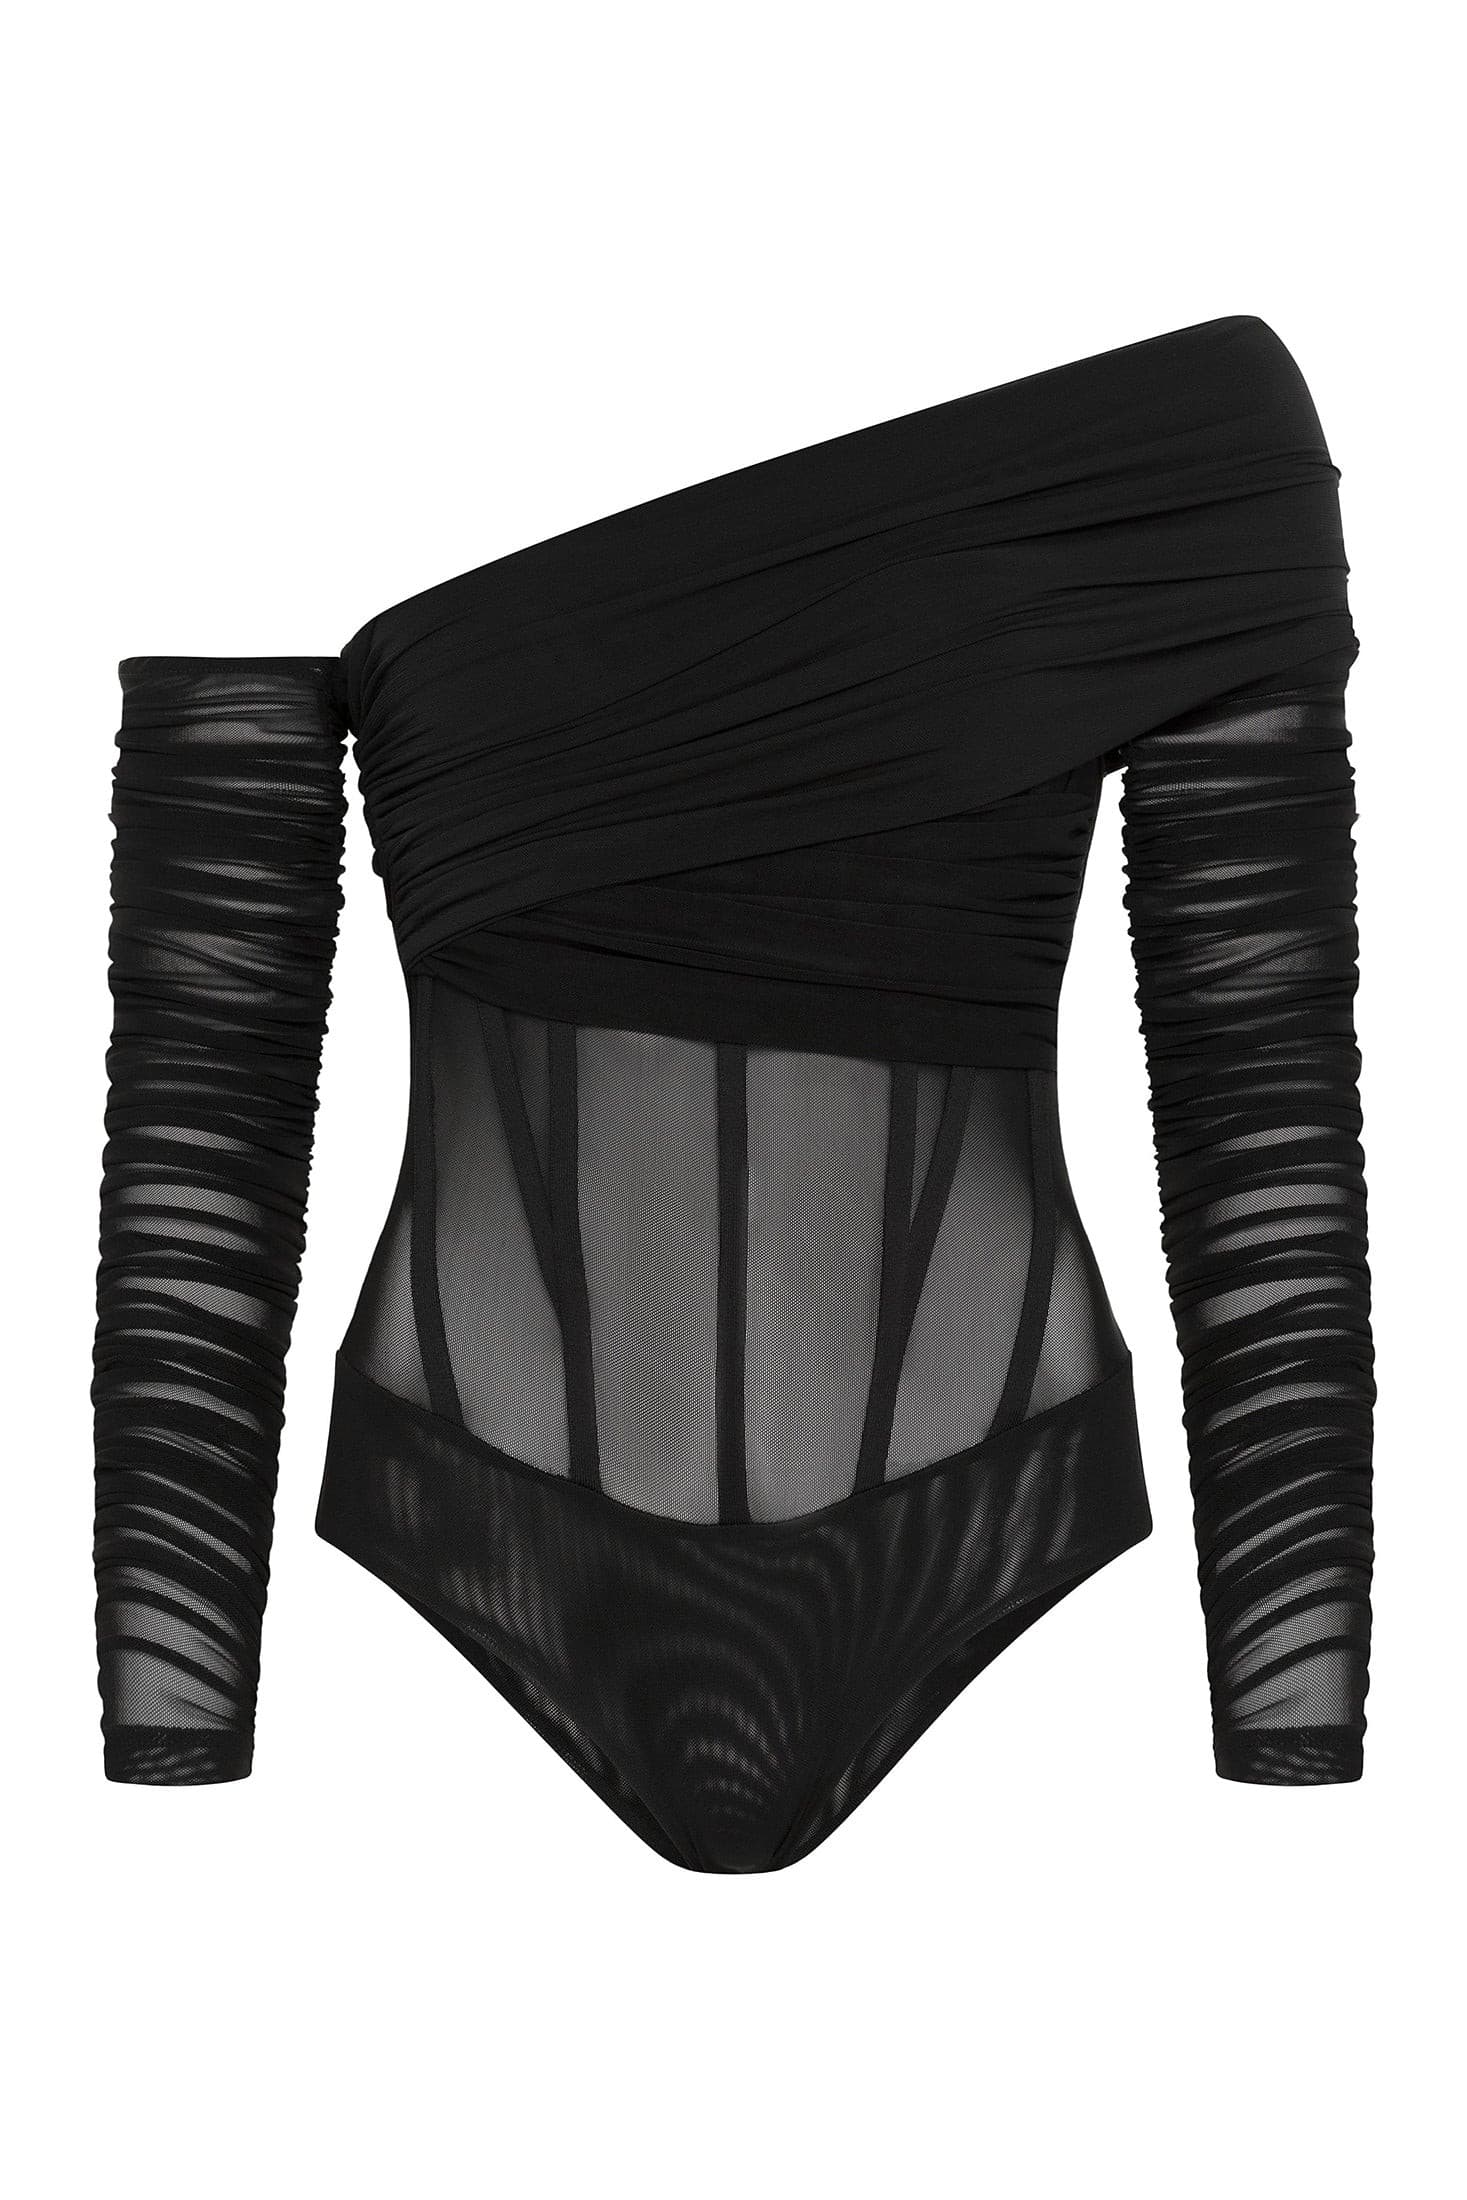 MESH CORSET BODYSUIT  Black mesh bodysuit, Corset bodysuit, Body